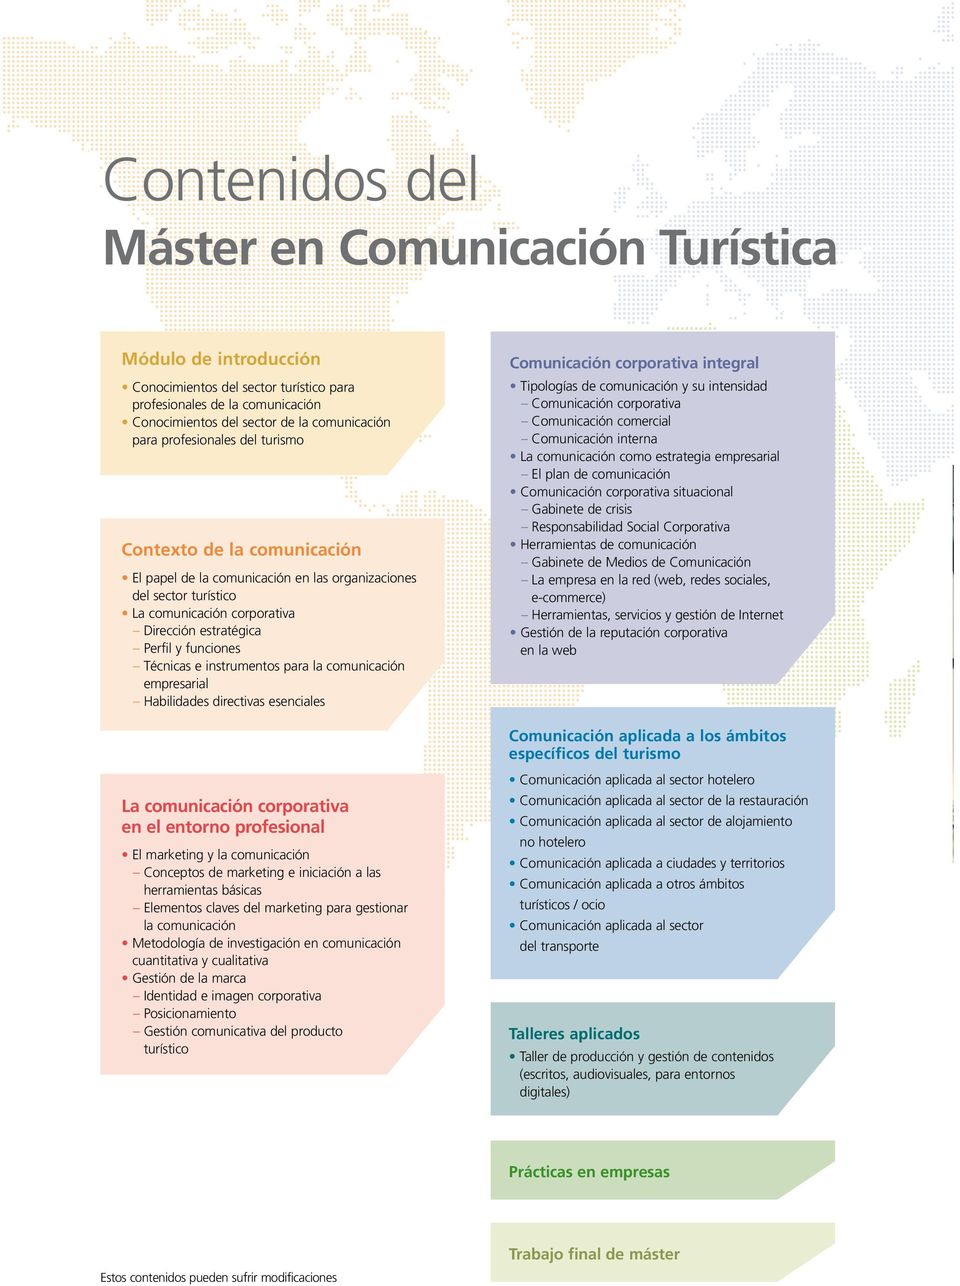 Técnicas e instrumentos para la comunicación empresarial Habilidades directivas esenciales Comunicación corporativa integral Tipologías de comunicación y su intensidad Comunicación corporativa